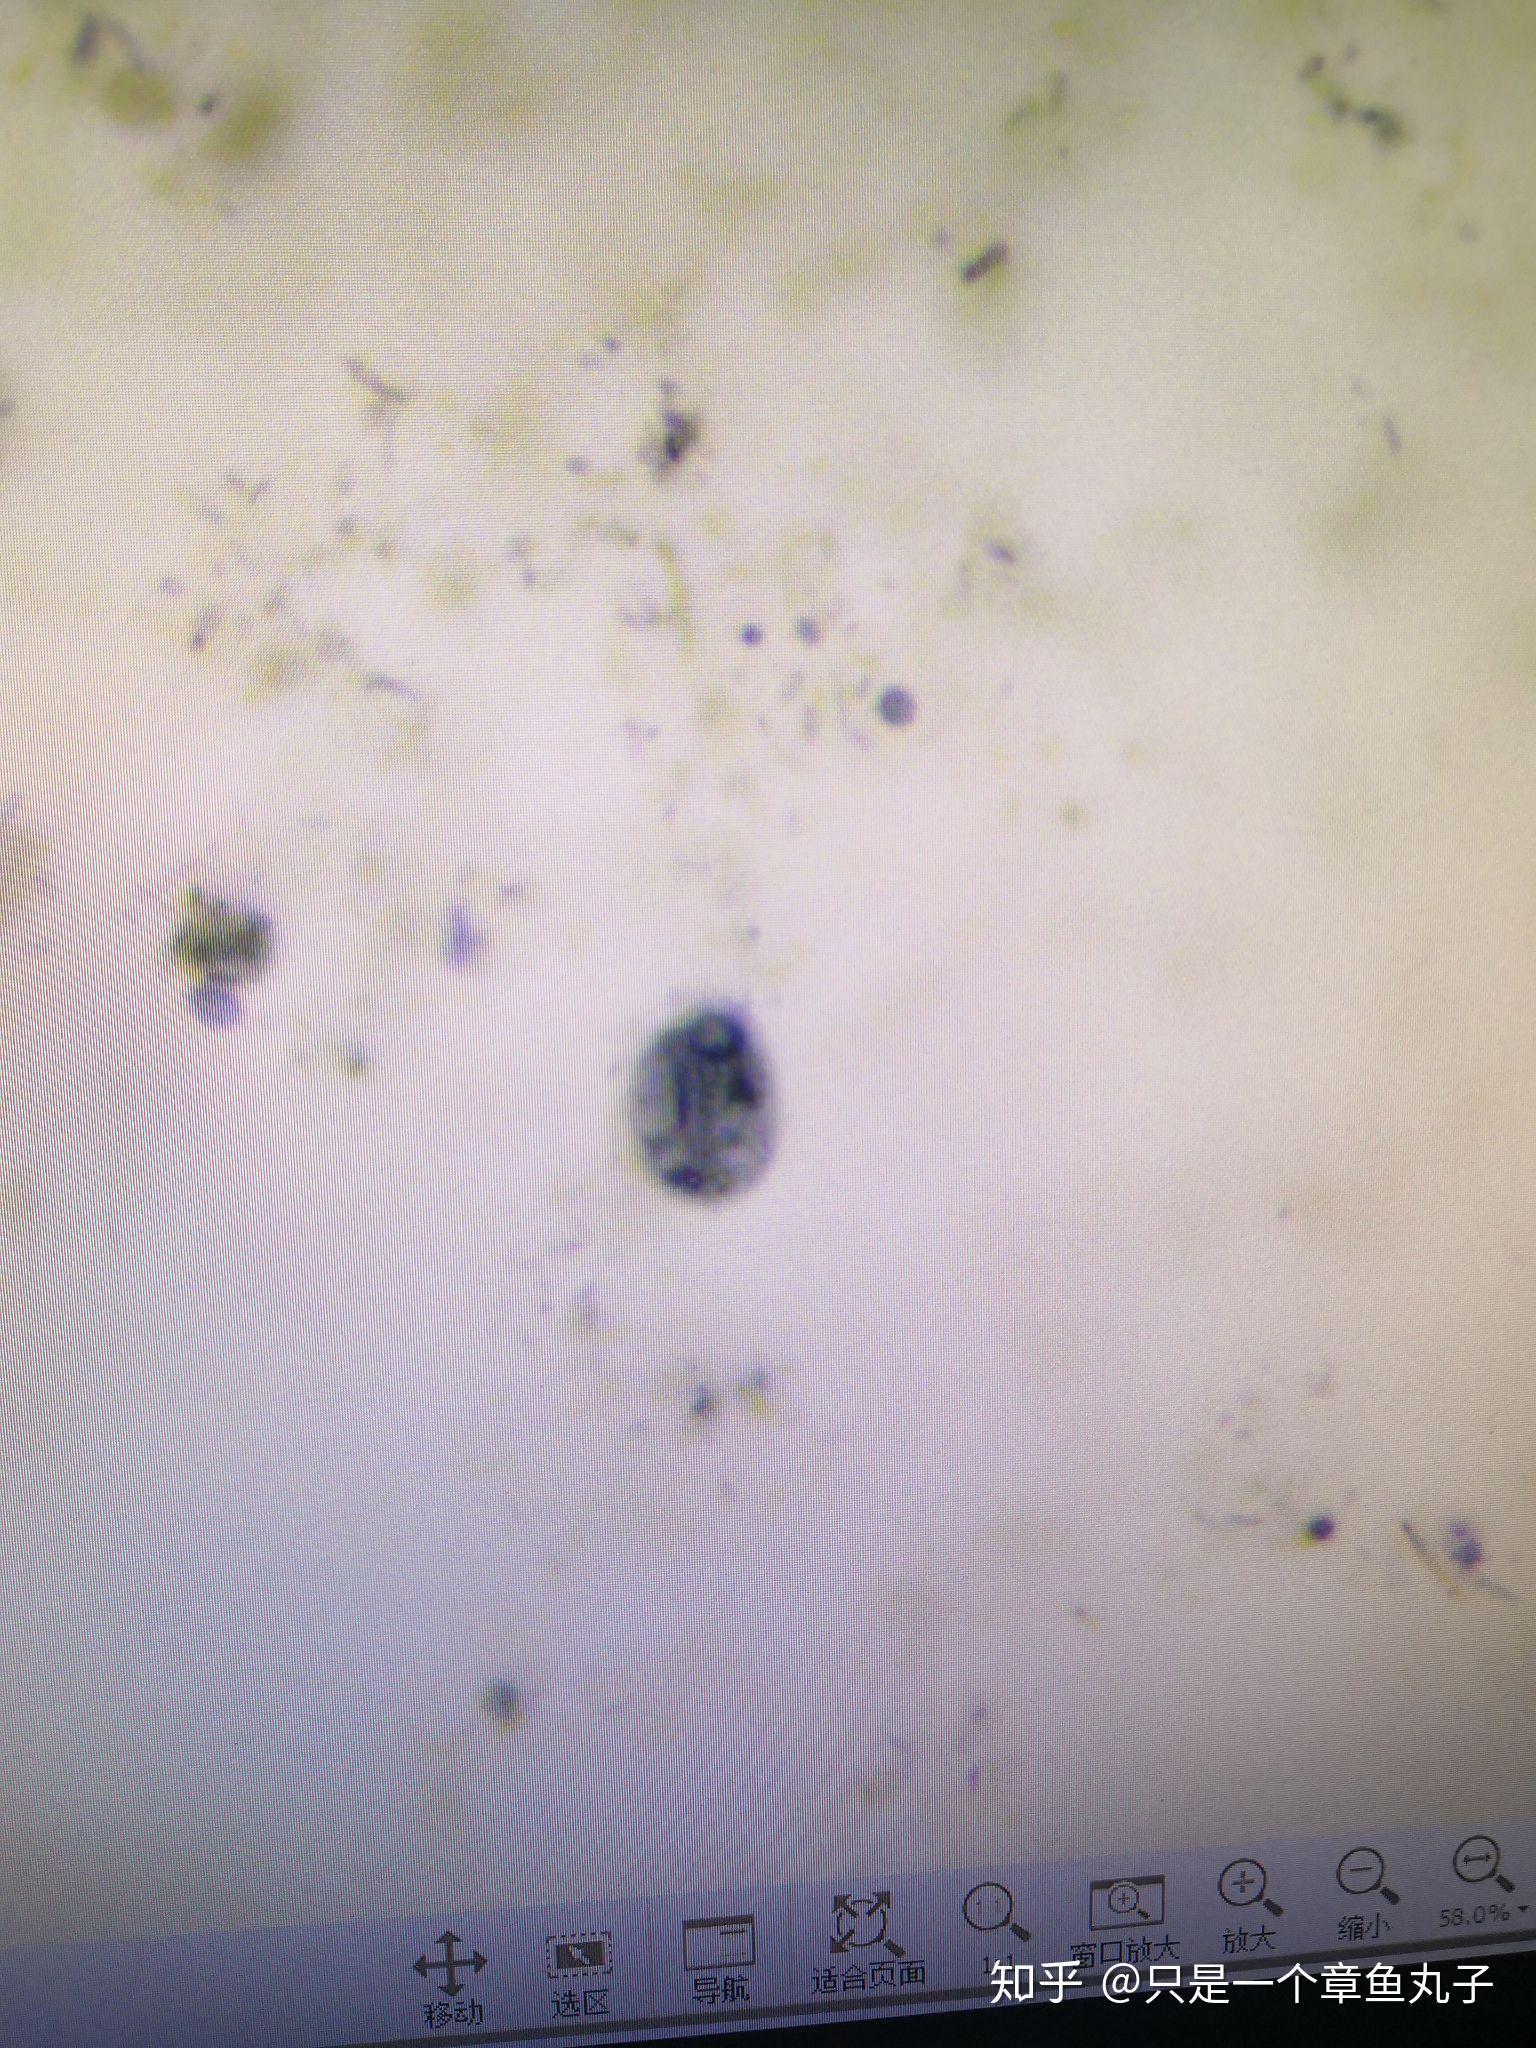 寄生虫部分显微镜下图